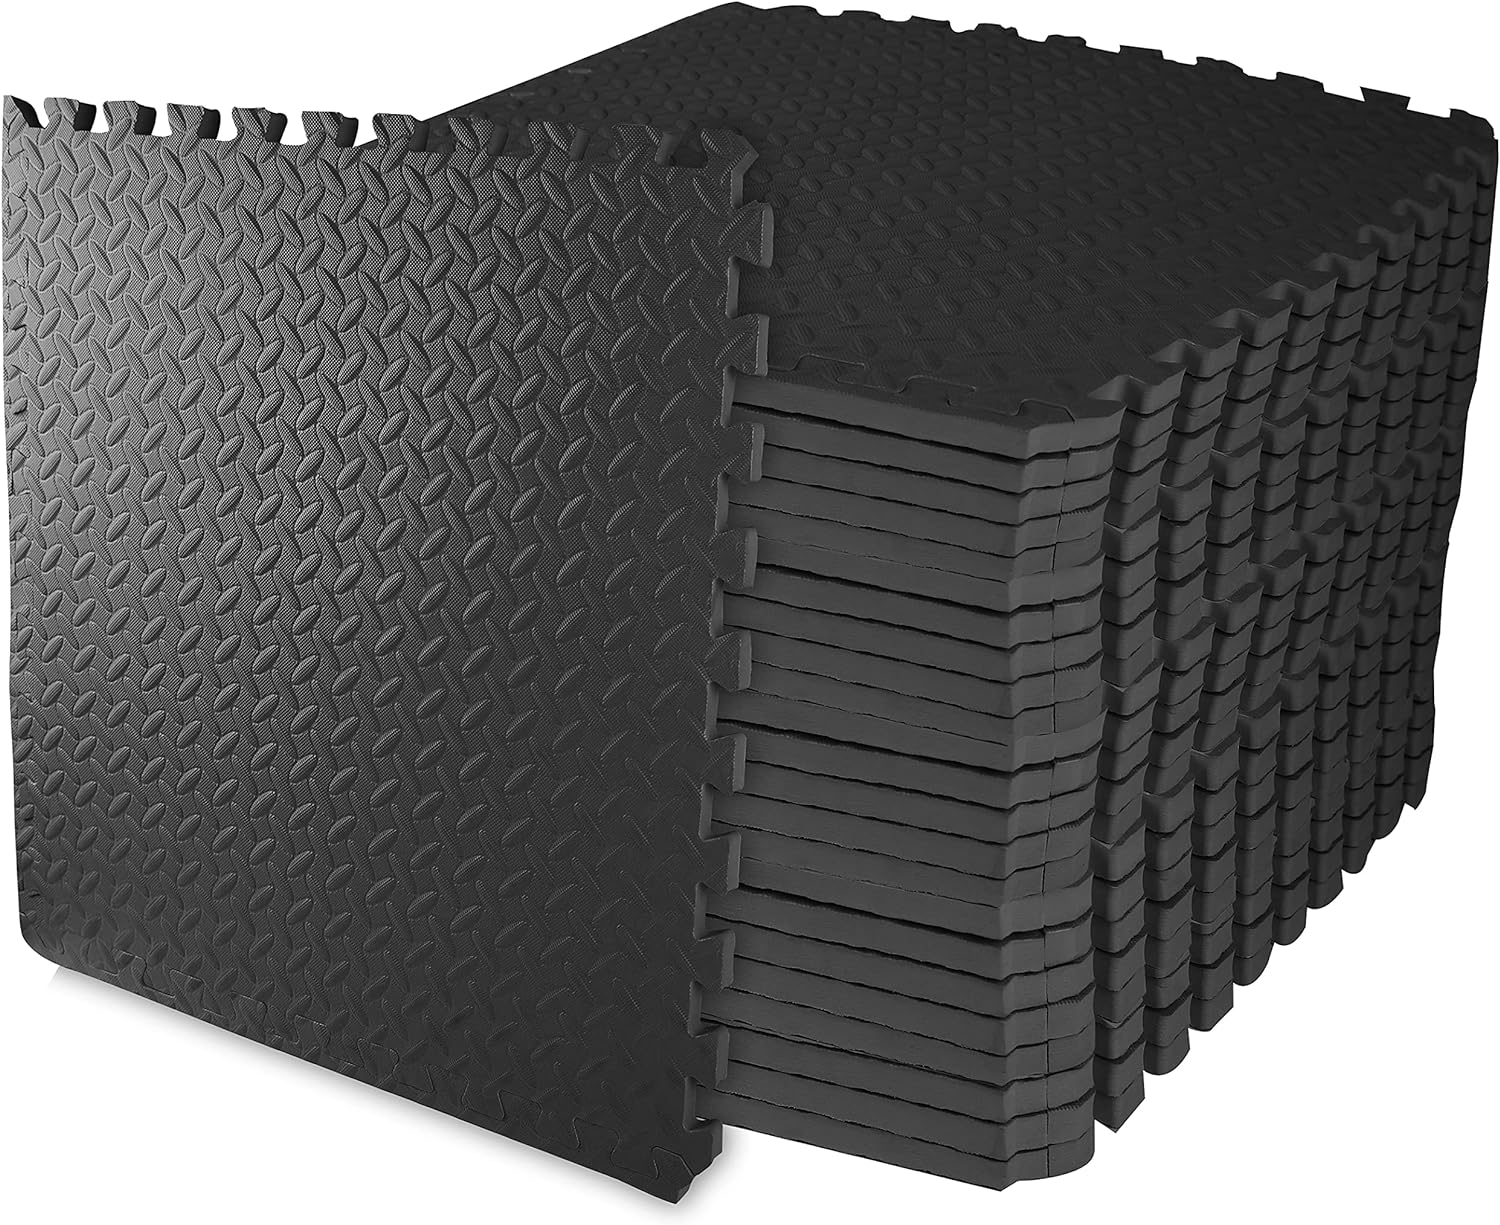 EL Premium Eva Foam Puzzle Black & Grey Exercise Mat with Interlocking Tiles and Borders